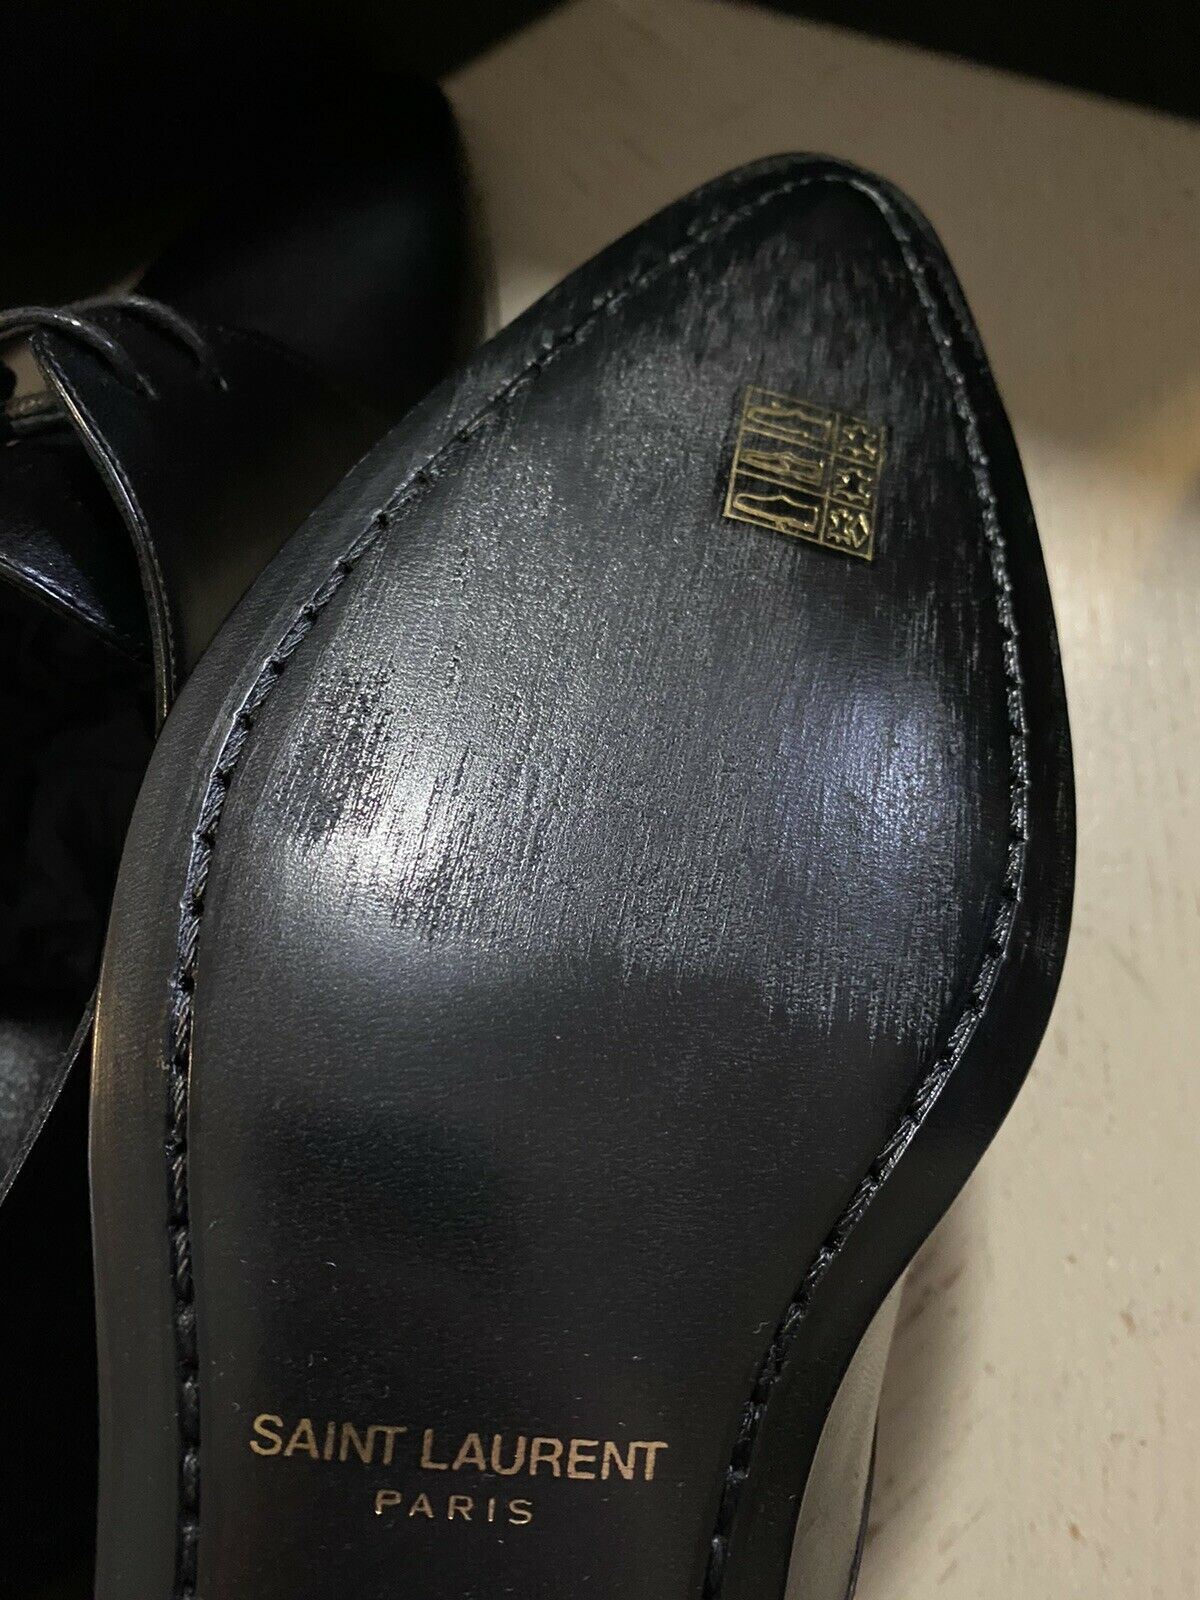 NIB $795 Saint Laurent Men’s Leather Dress Shoes Black 10 US /43 Eu Italy